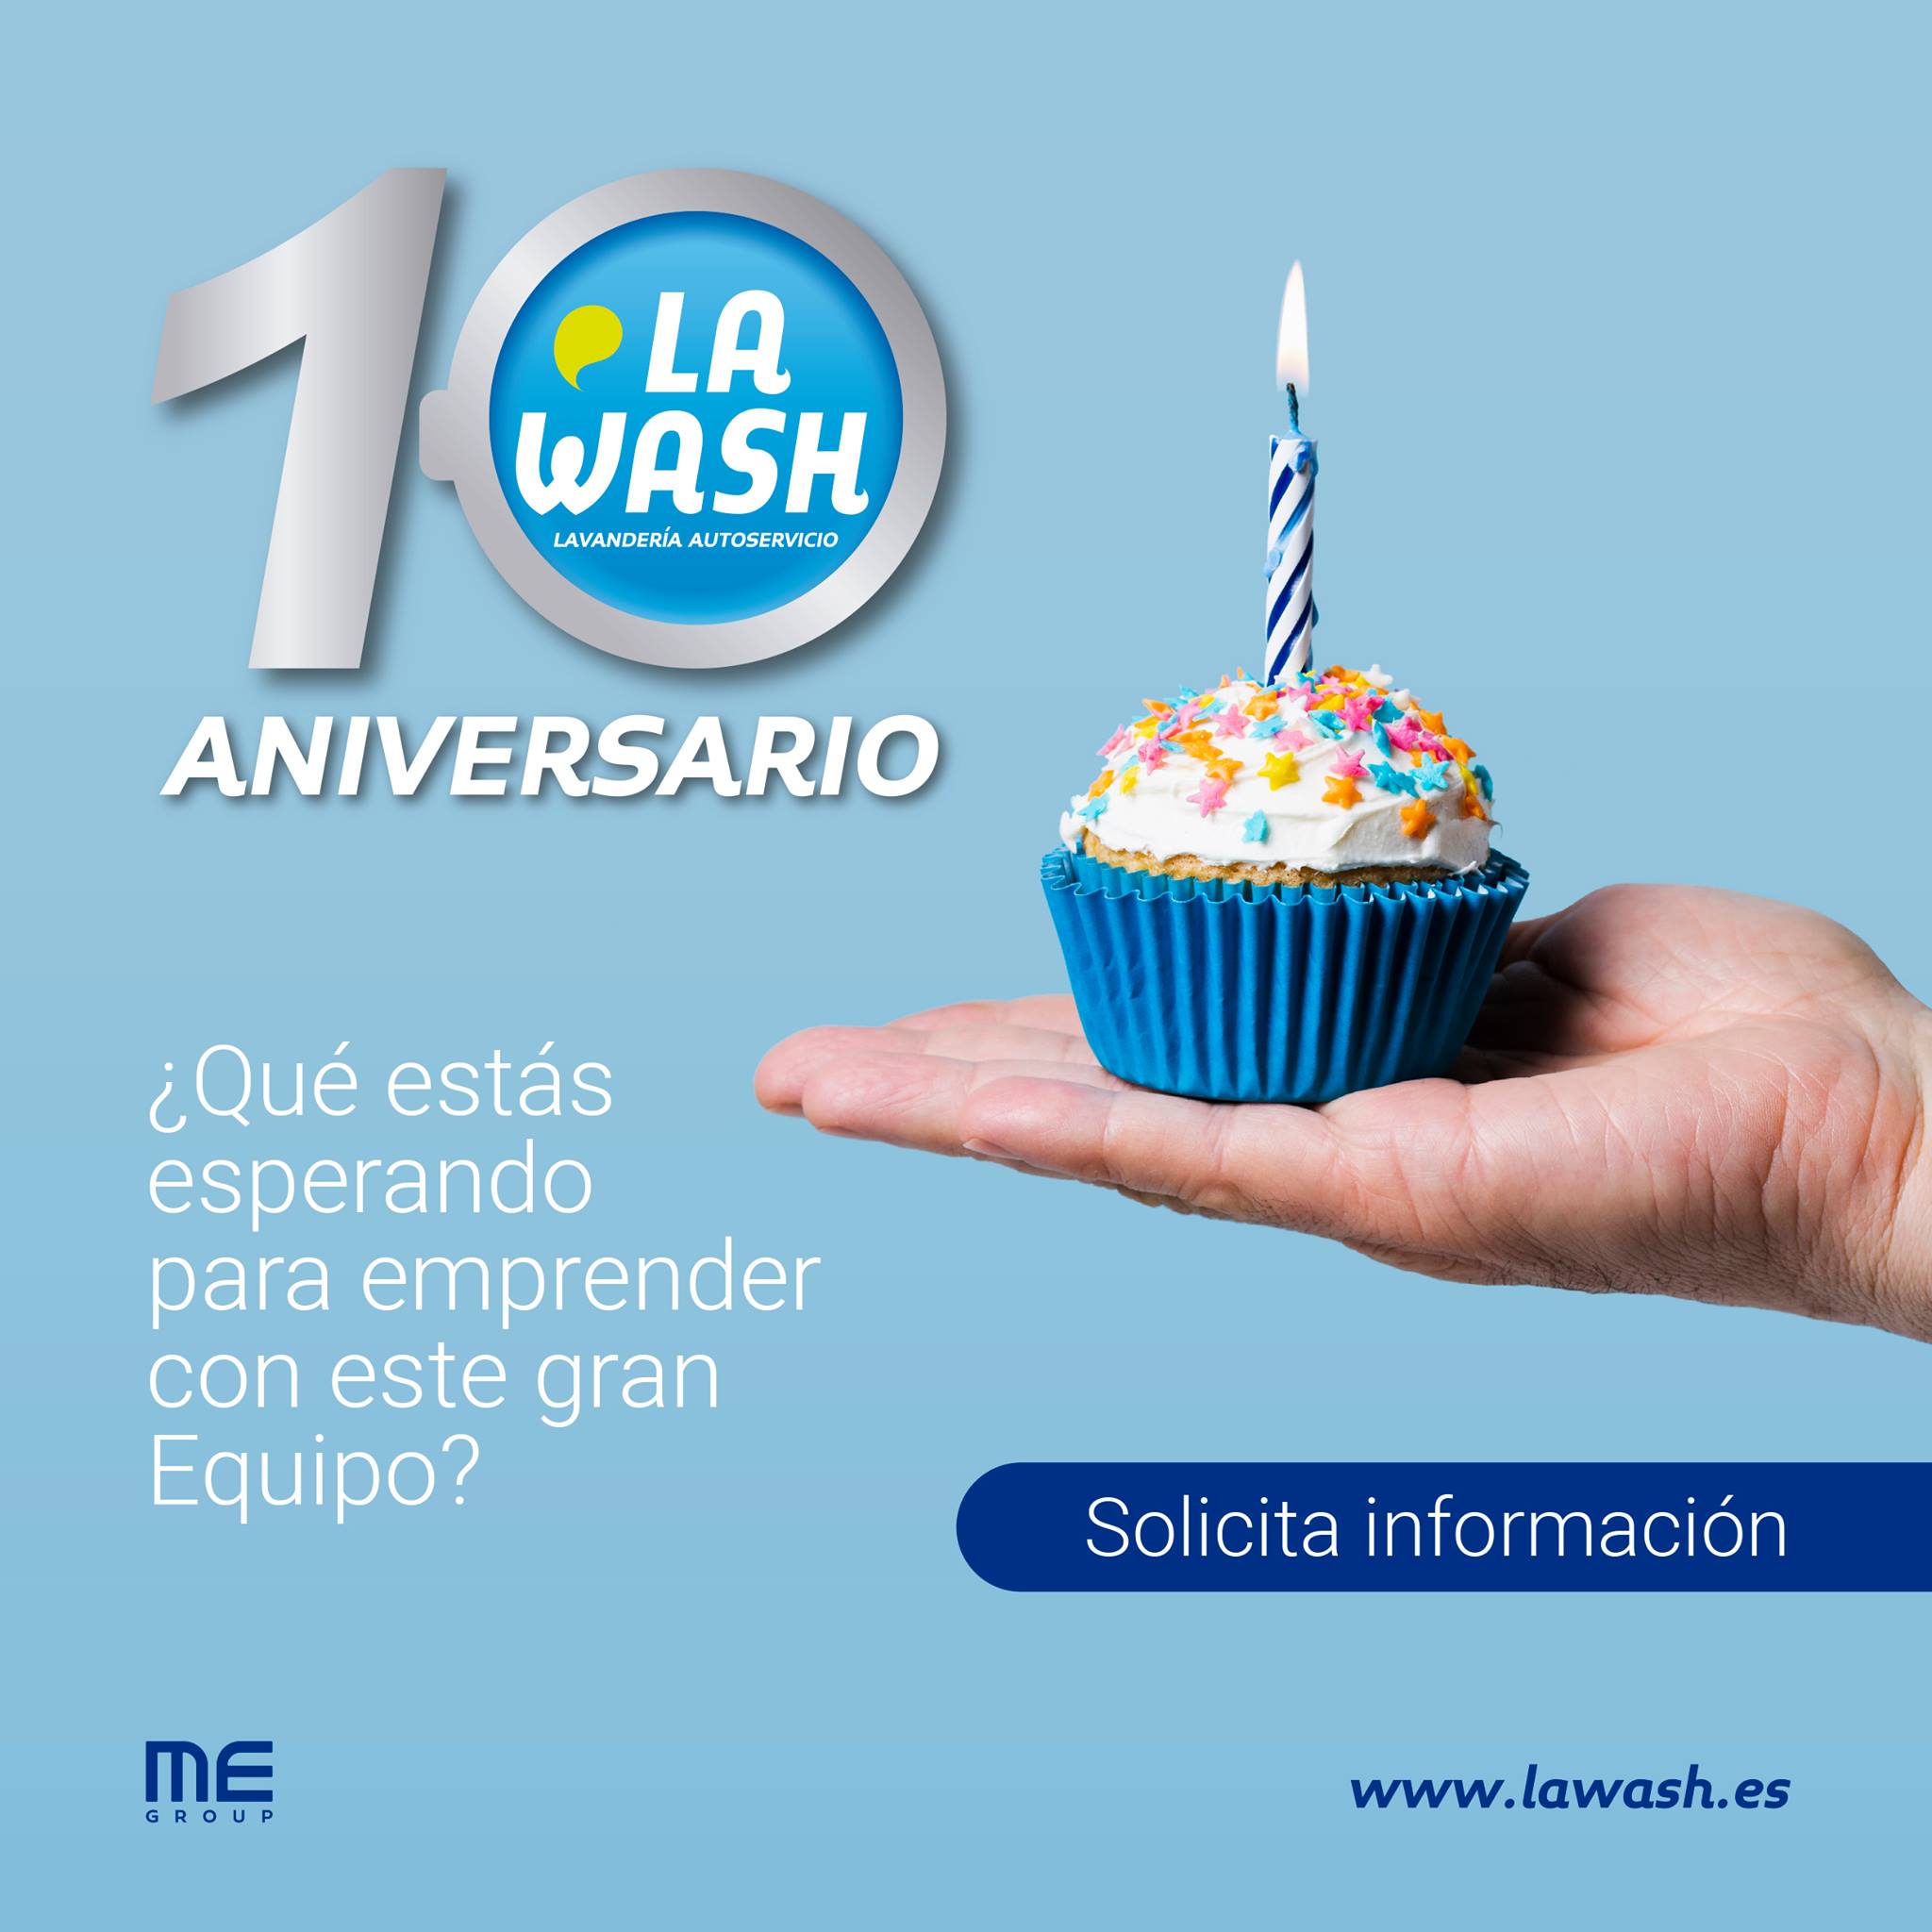 Décimo aniversario de lavanderías autoservicio La Wash